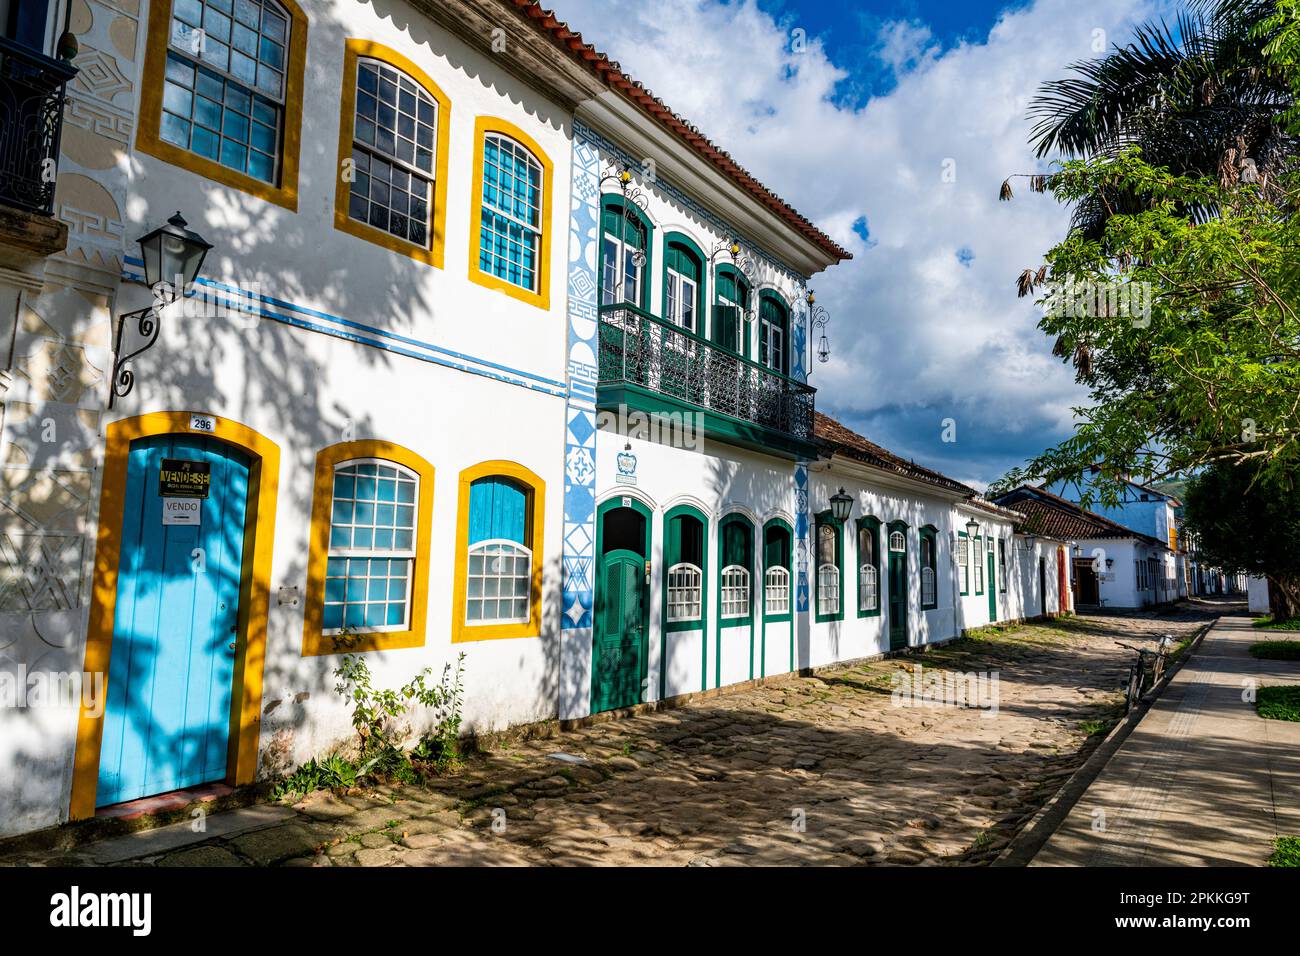 Bâtiments coloniaux, Paraty, site du patrimoine mondial de l'UNESCO, Brésil, Amérique du Sud Banque D'Images